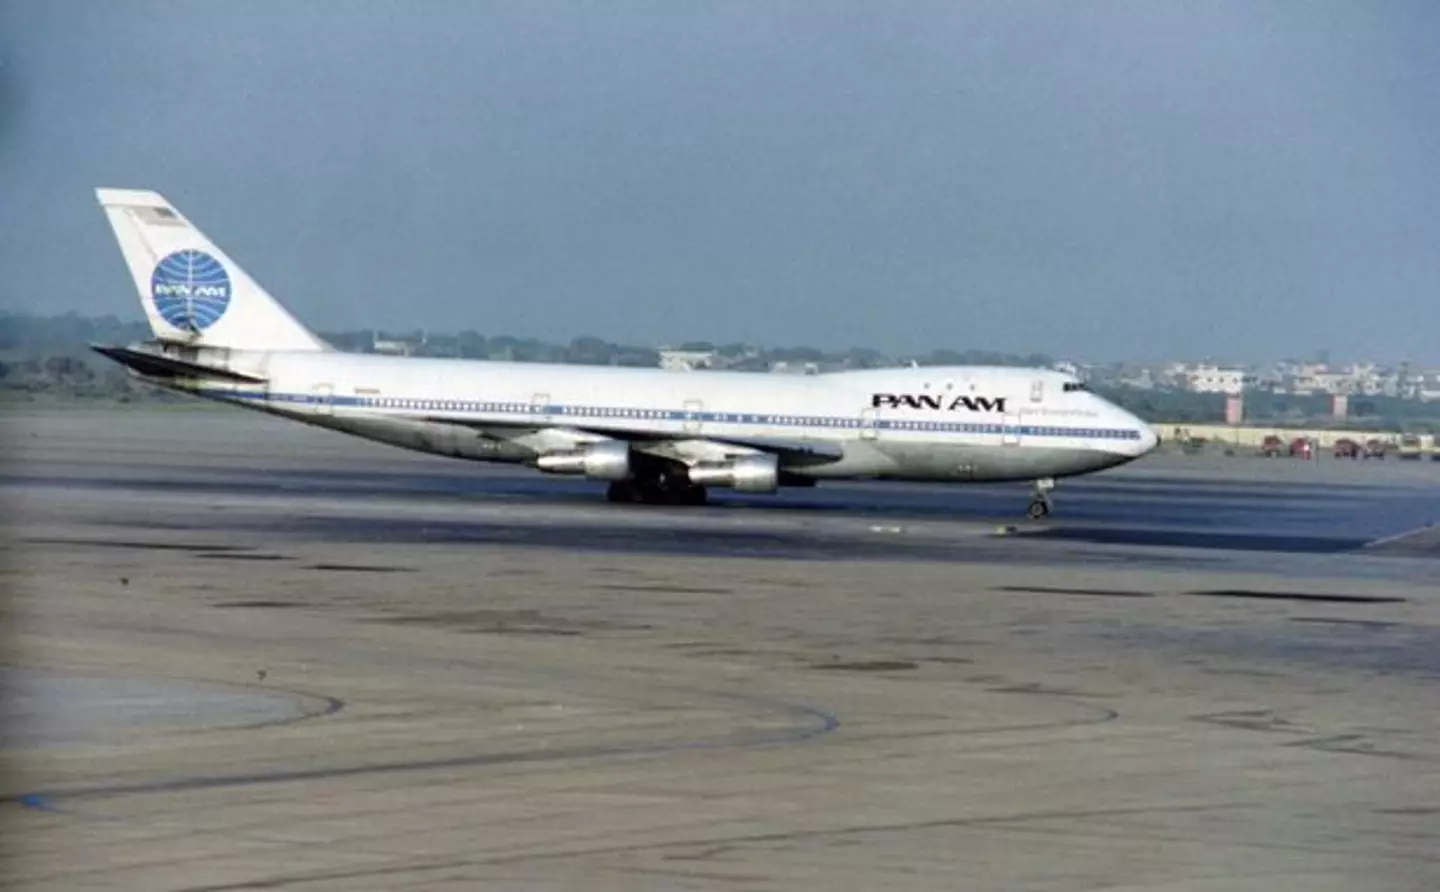 Pan-Am flight 73 in 1986.